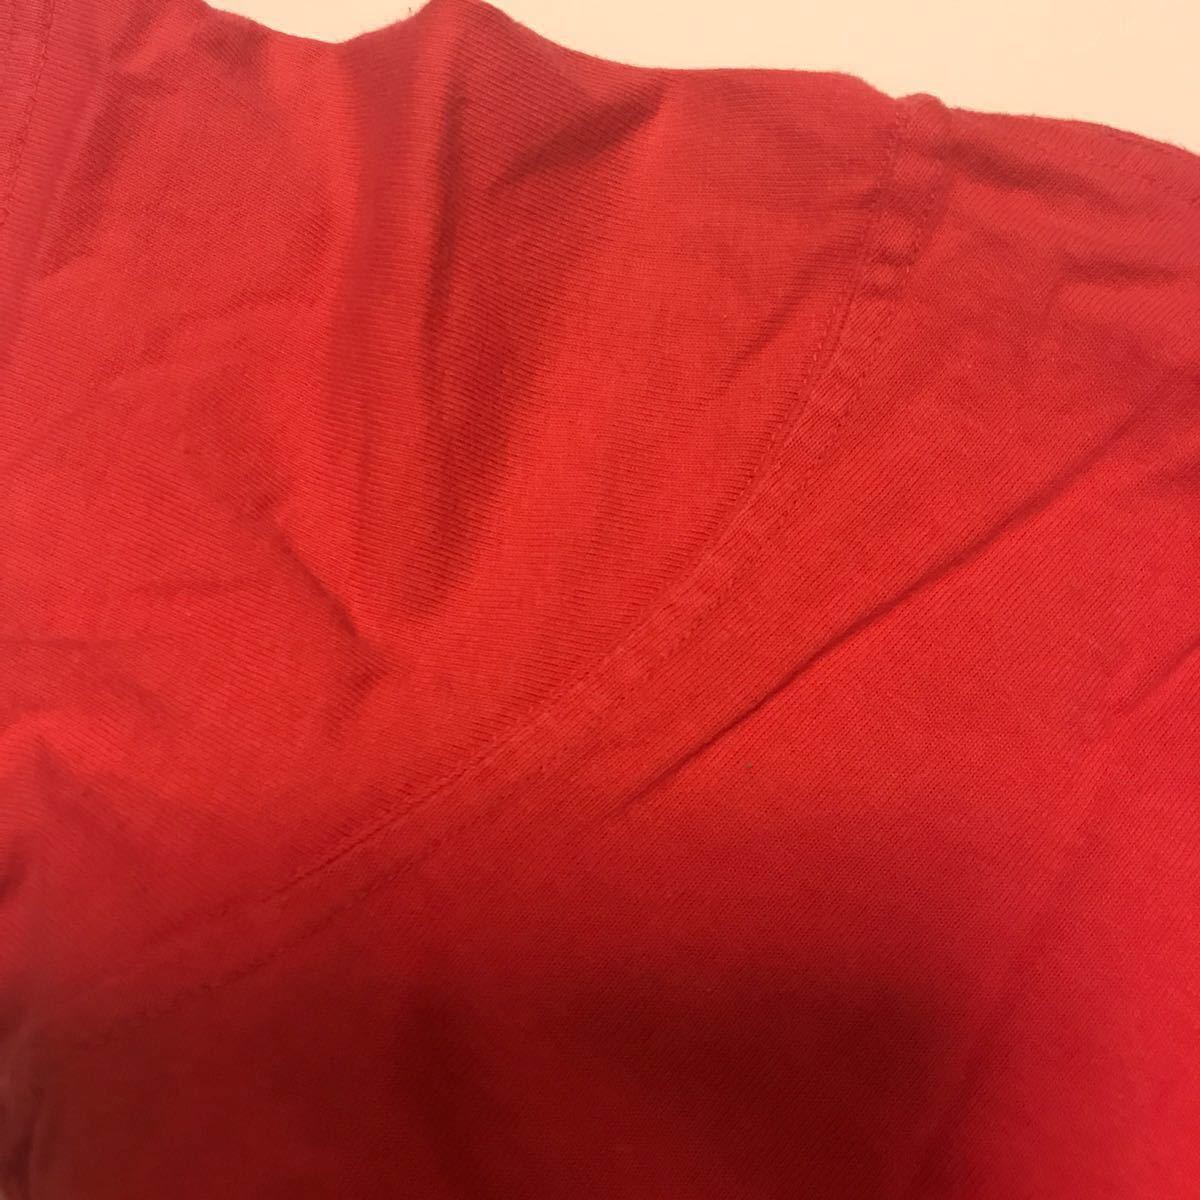 無地 Tシャツ レディース ピンク ローズ サーモン レッド トップス 半袖 シンプル 綿 100% シャツ ジュニア 子供 女児